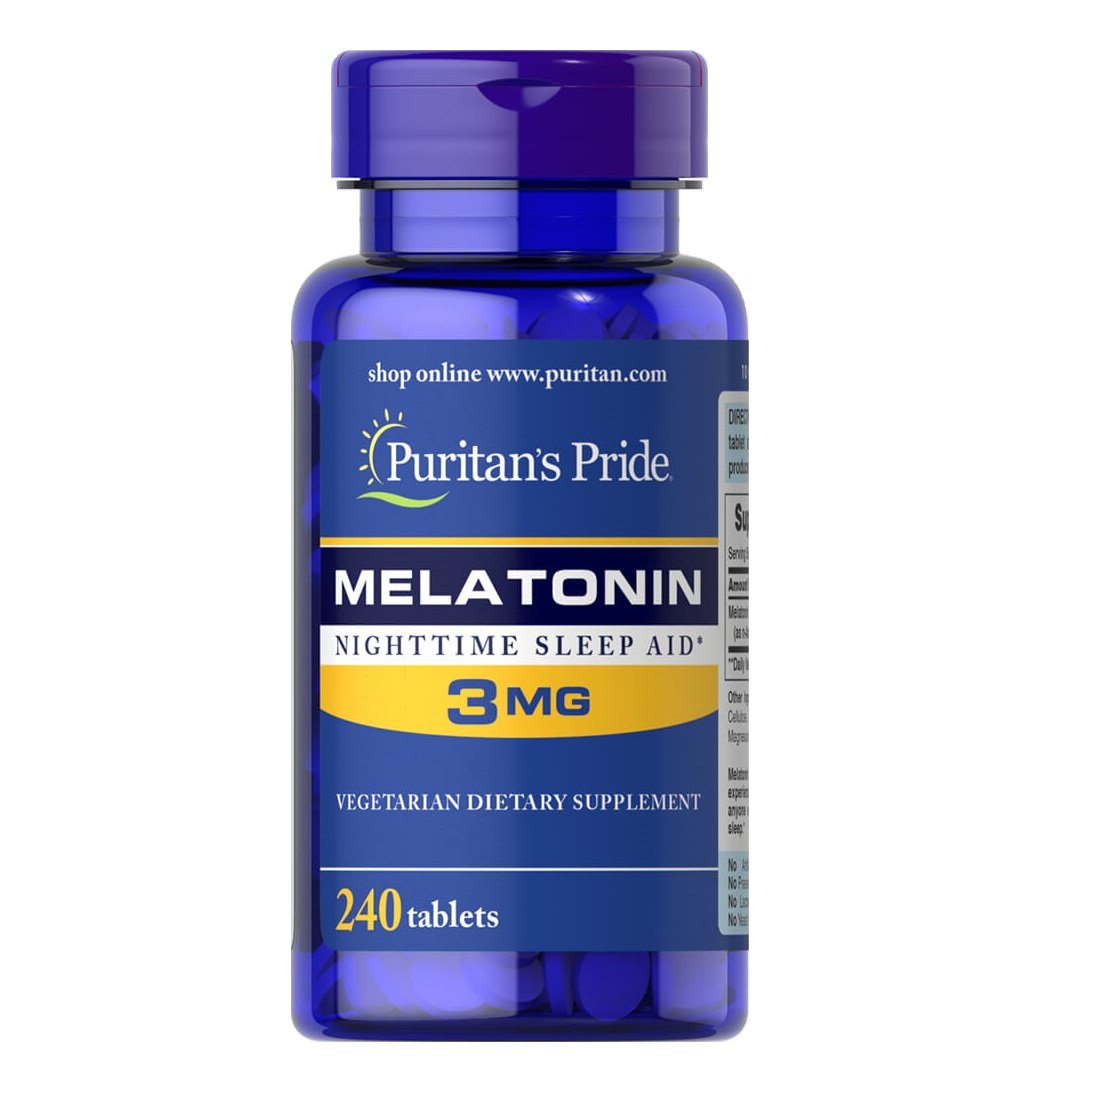 Натуральная добавка Puritan's Pride Melatonin 3 mg, 240 таблеток,  мл, Puritan's Pride. Hатуральные продукты. Поддержание здоровья 